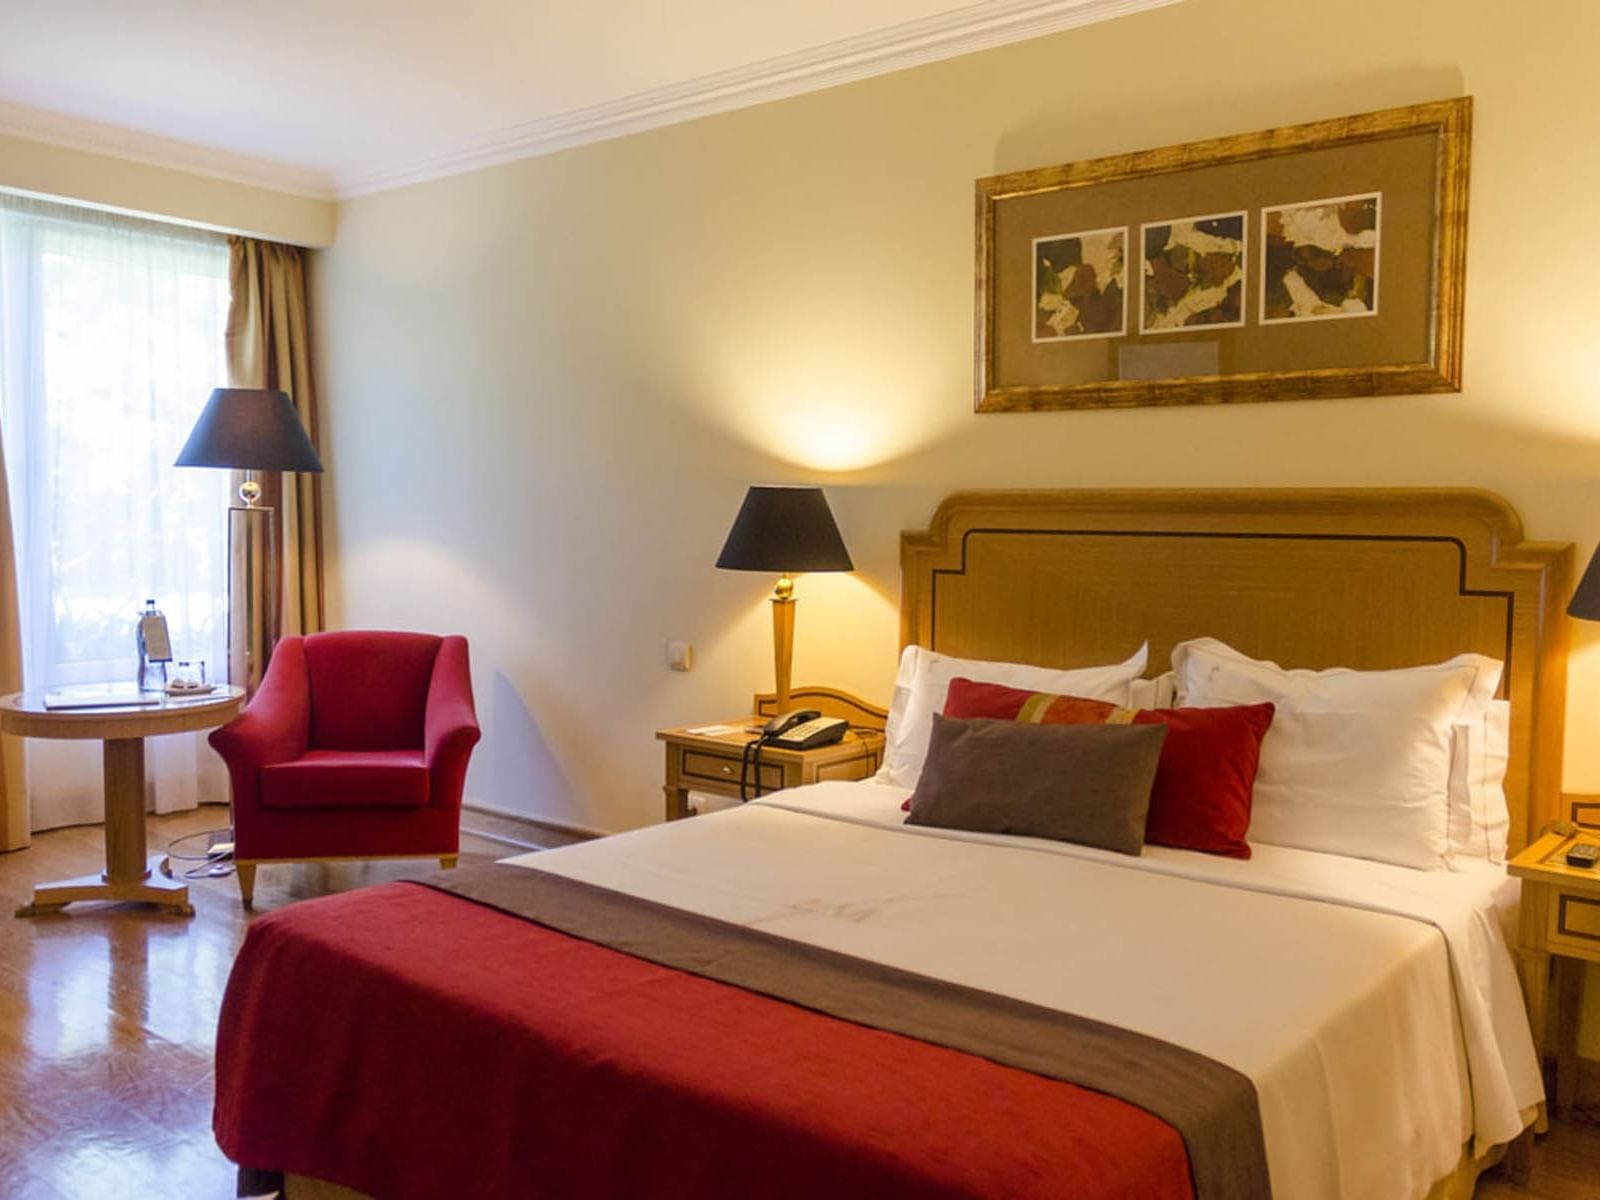 Cama queen size confortável em quarto moderno - no Hotel Cascais Miragem Health and Spa